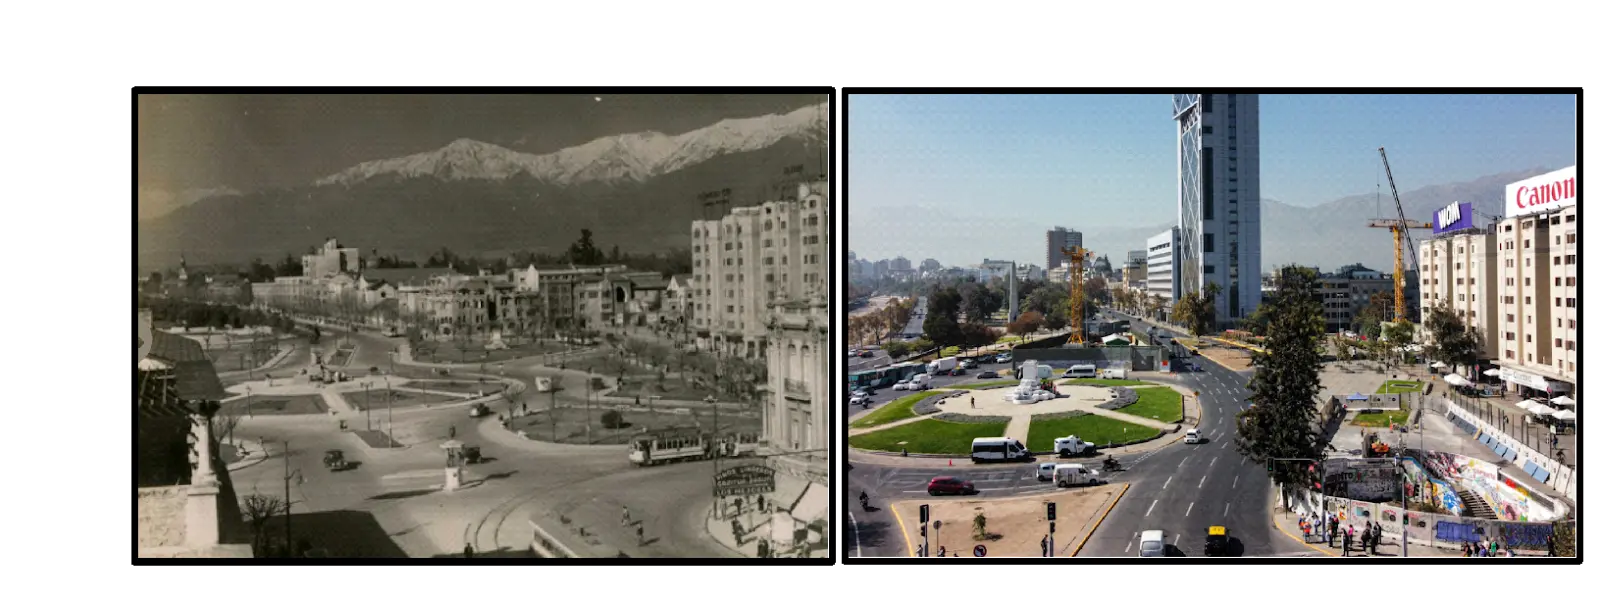 fotos comparativas de Santiago, rotonda plaza baquedano.